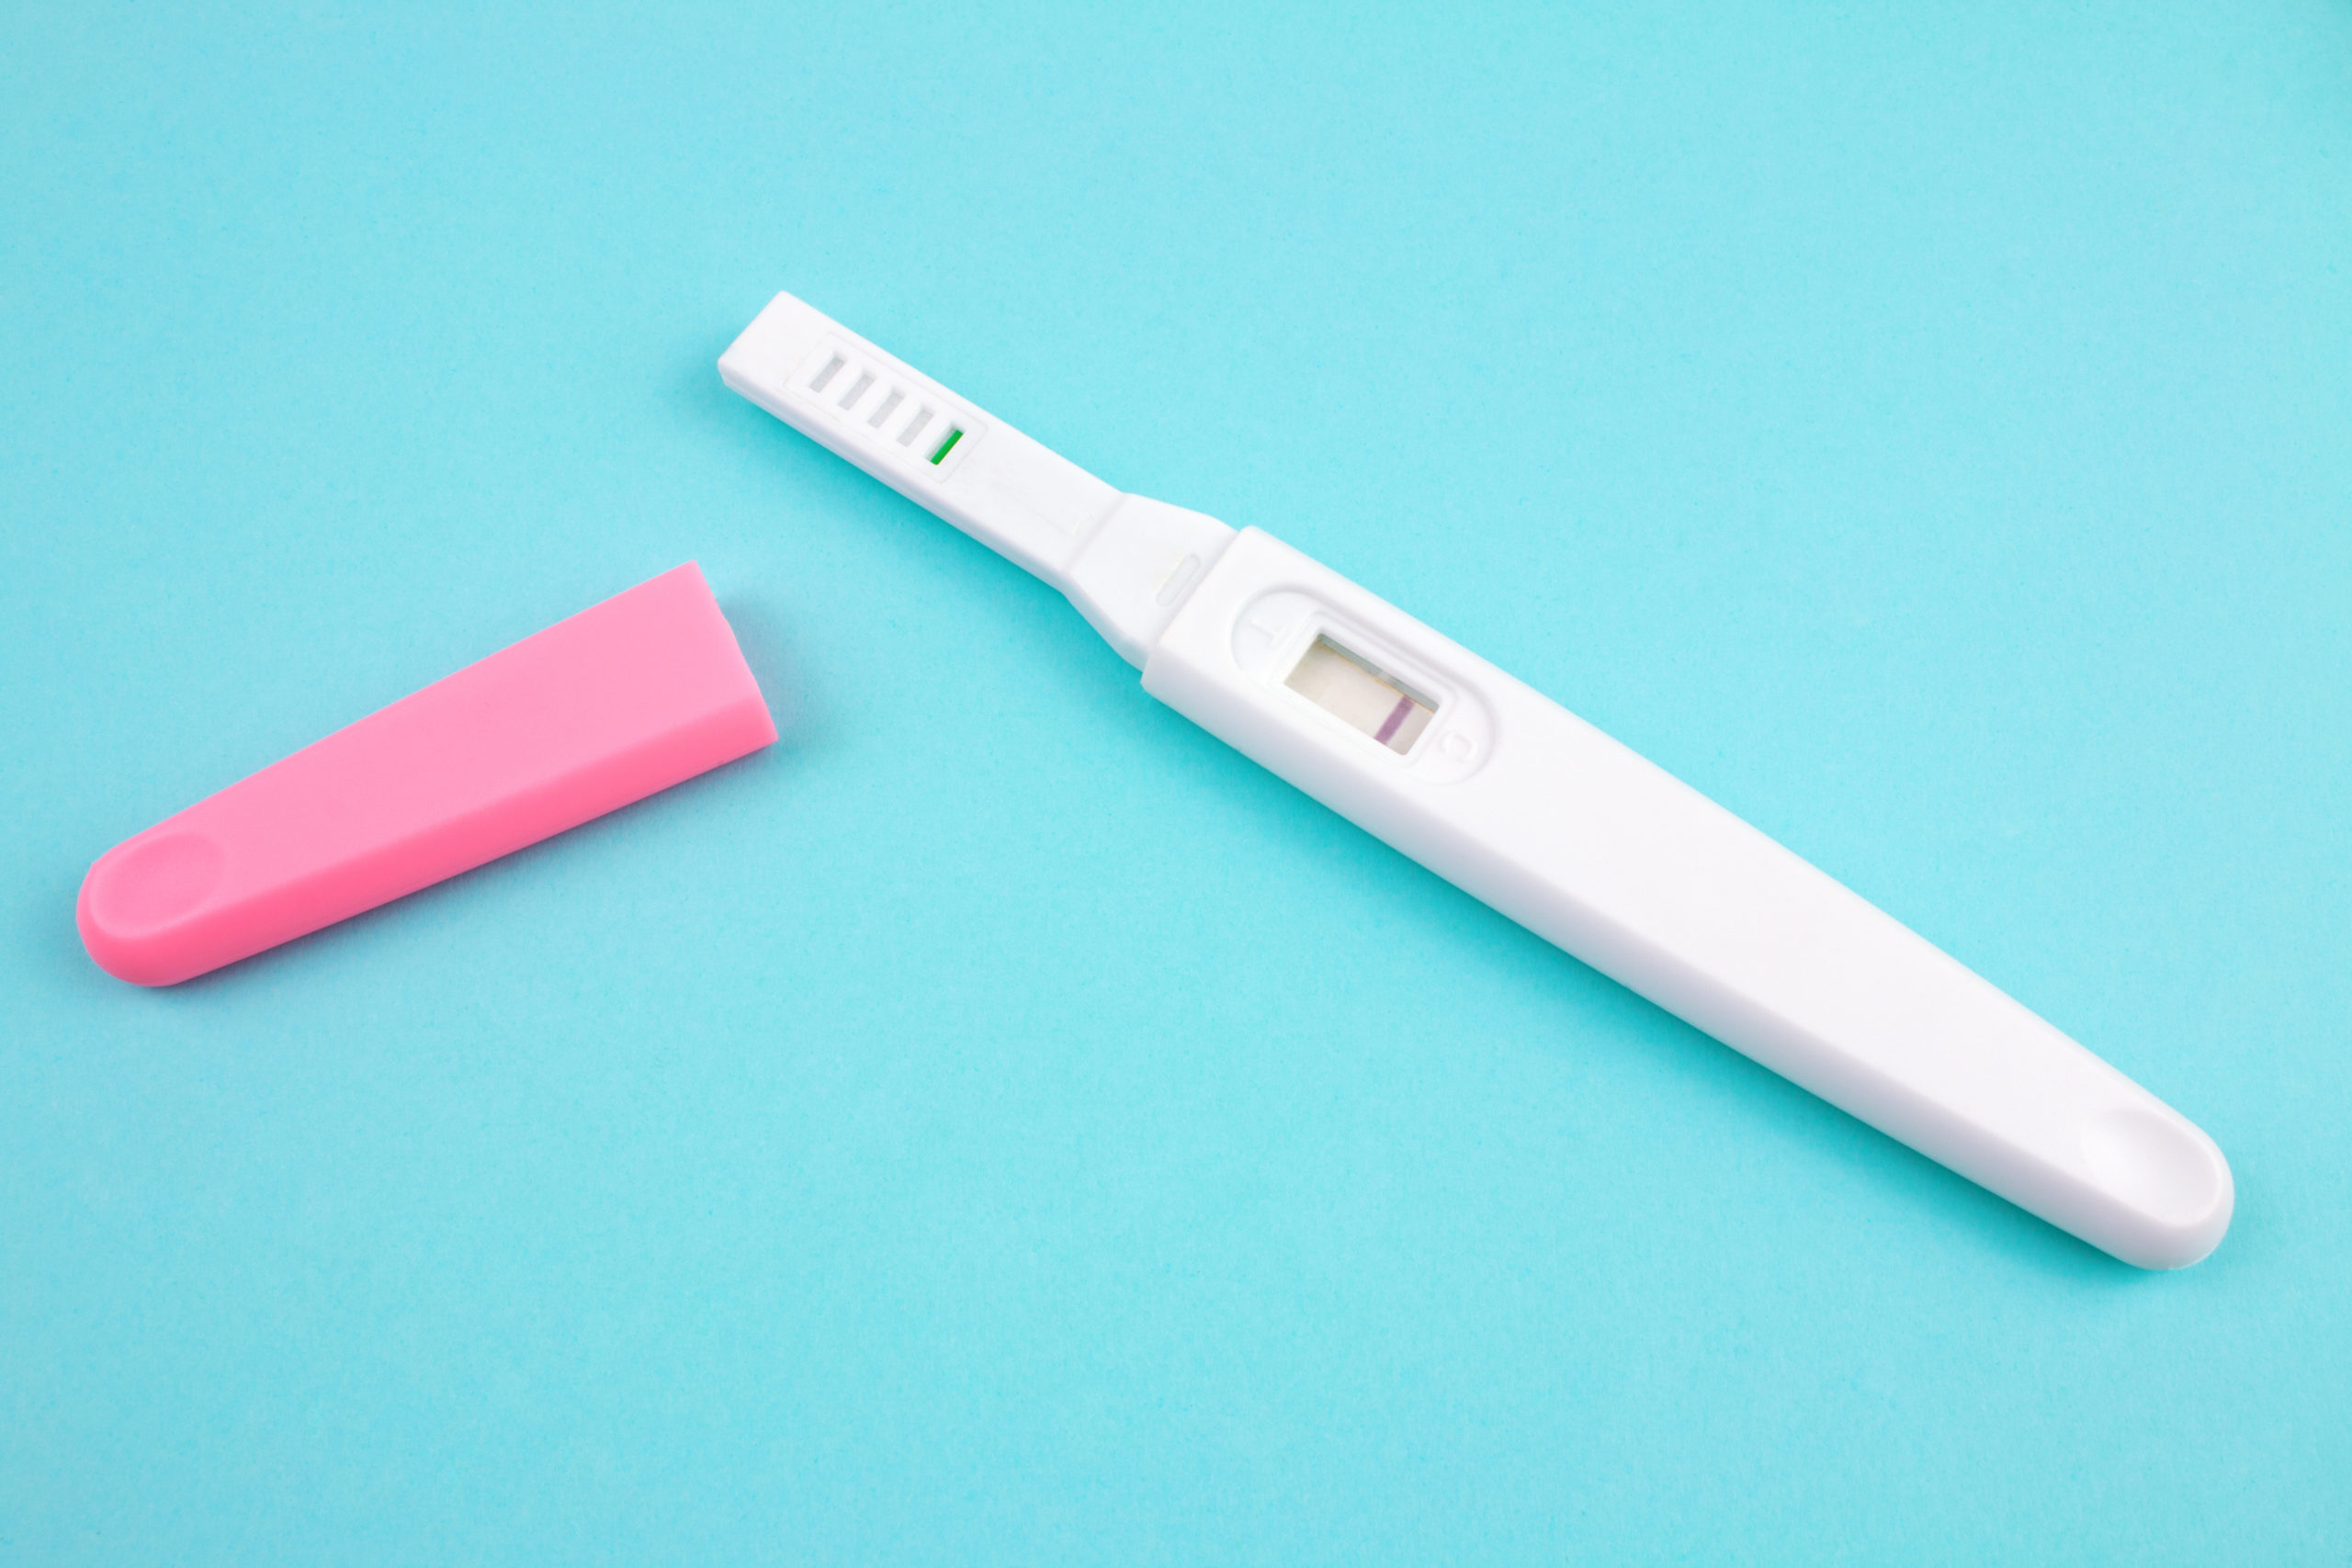 One step schwangerschaftstest falsch negativ